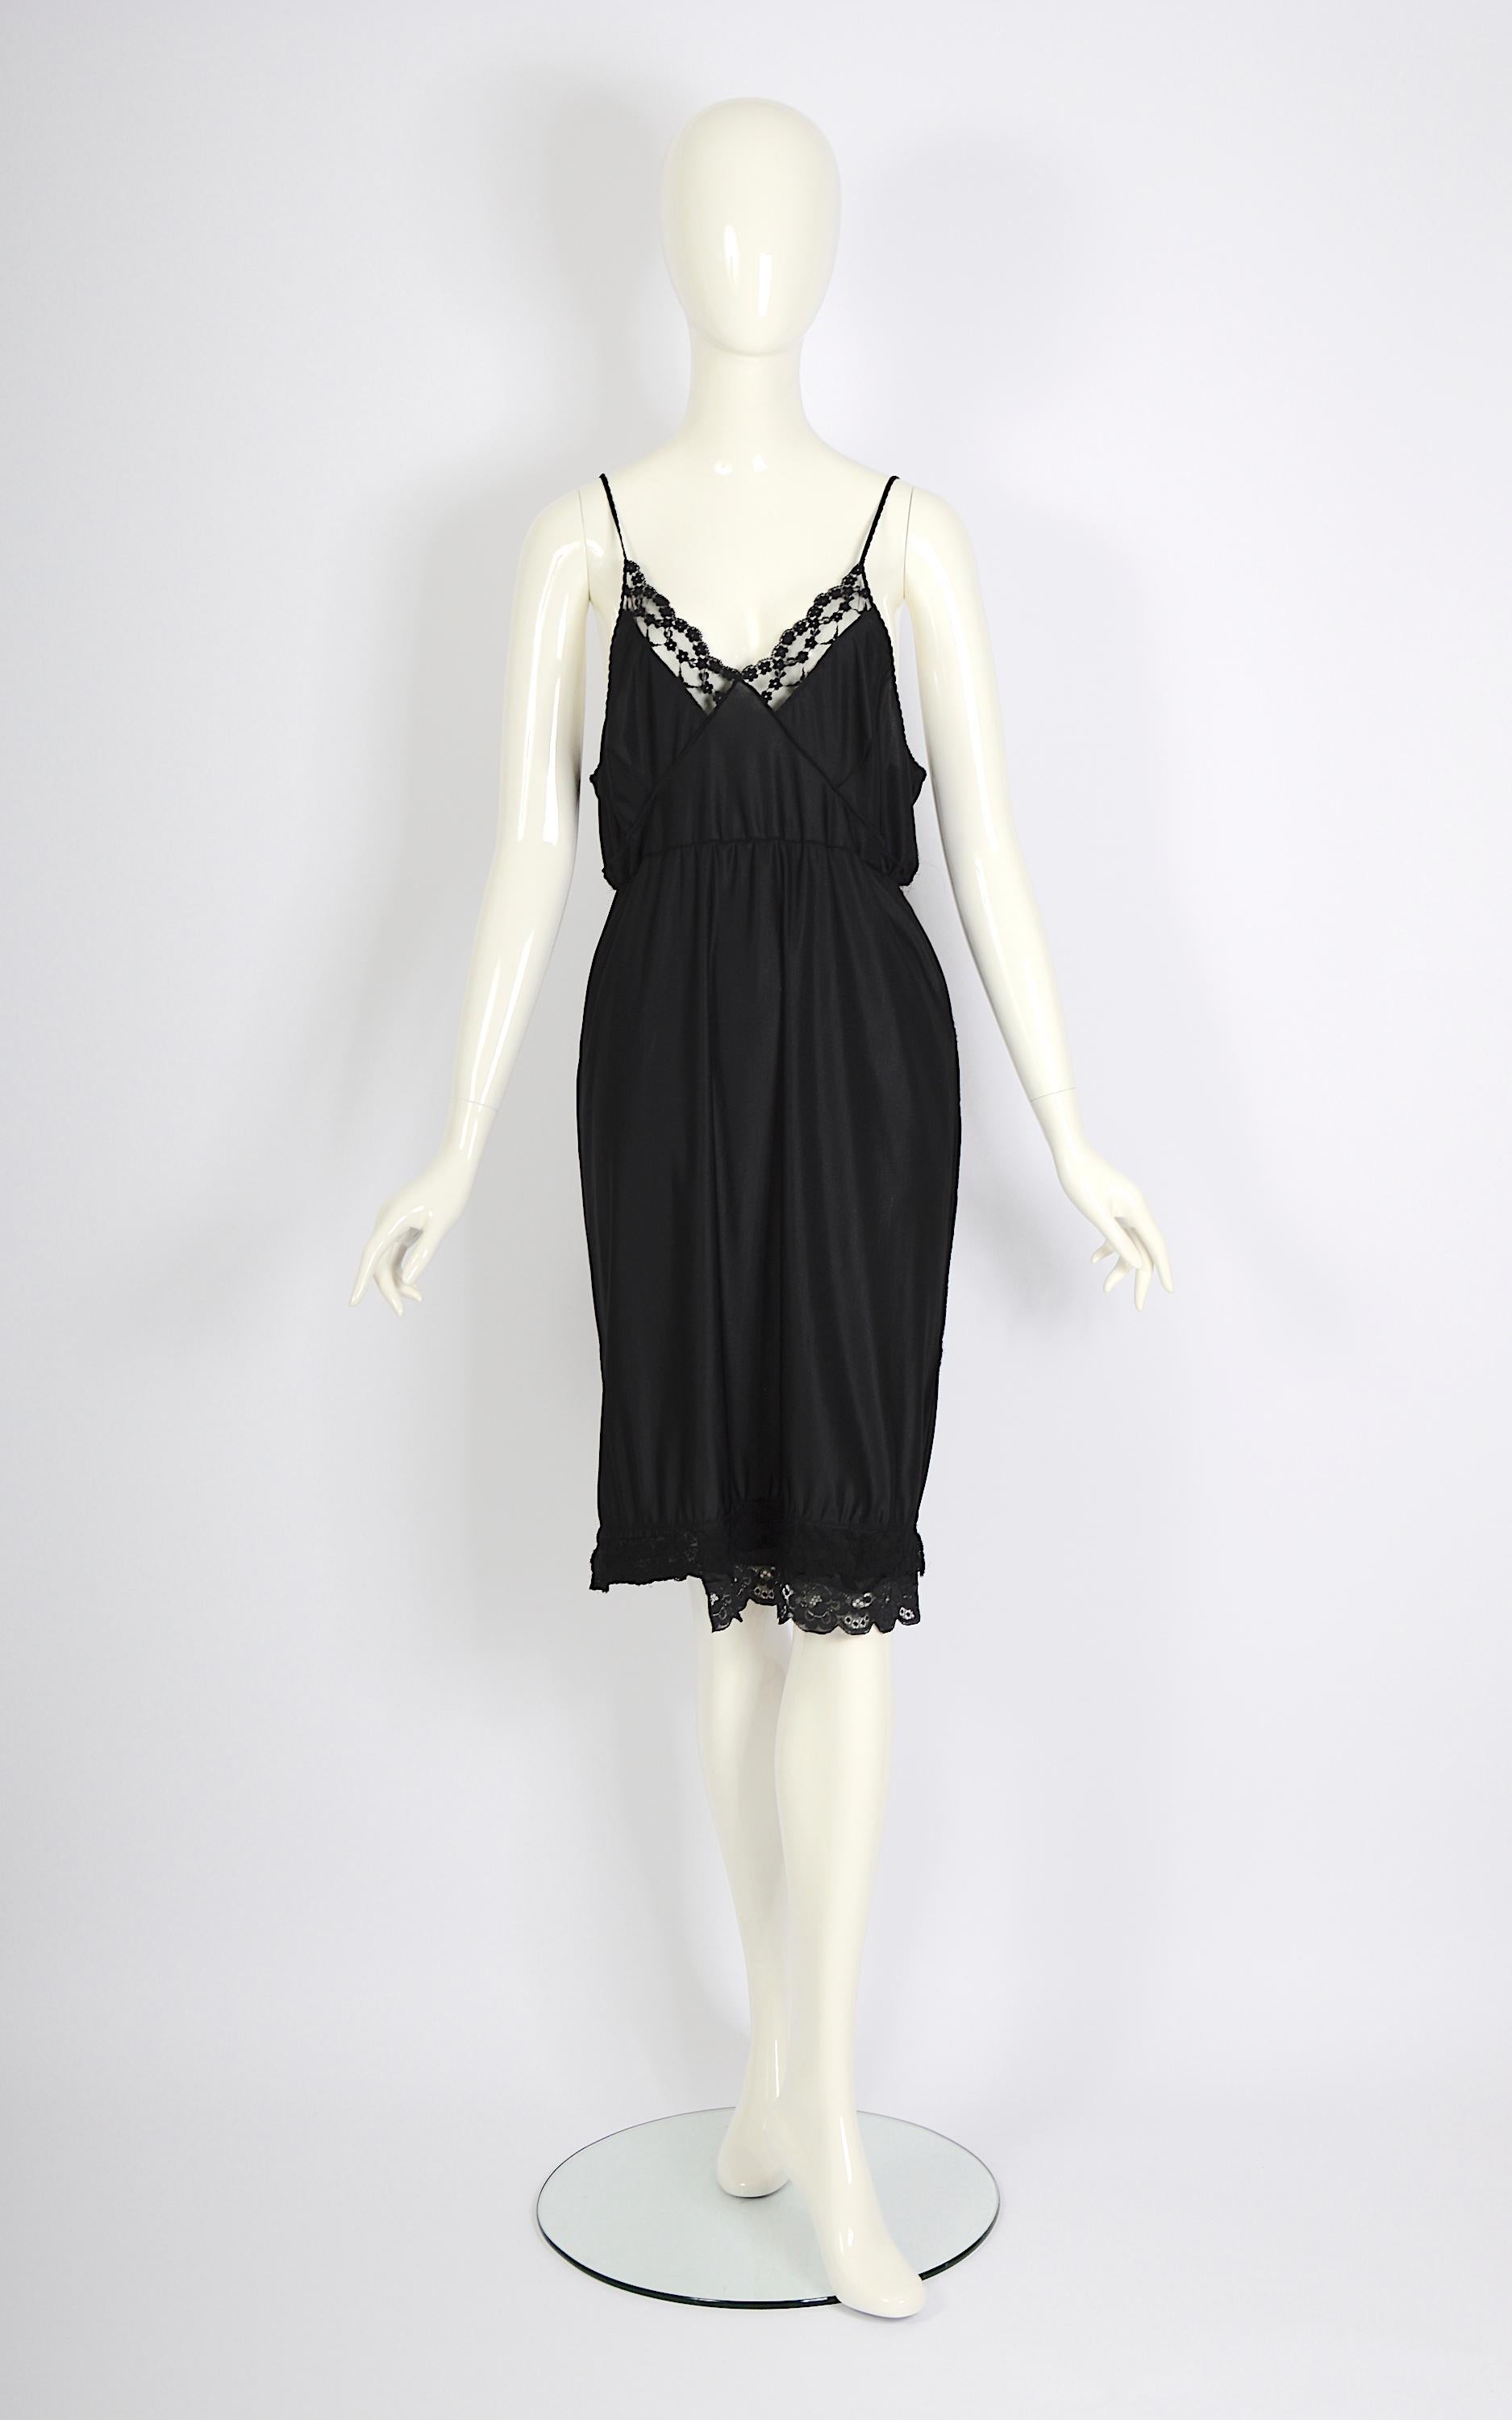 Vintage Martin Margiela artisanal ss 2003 runway black folded dress skirt For Sale 8